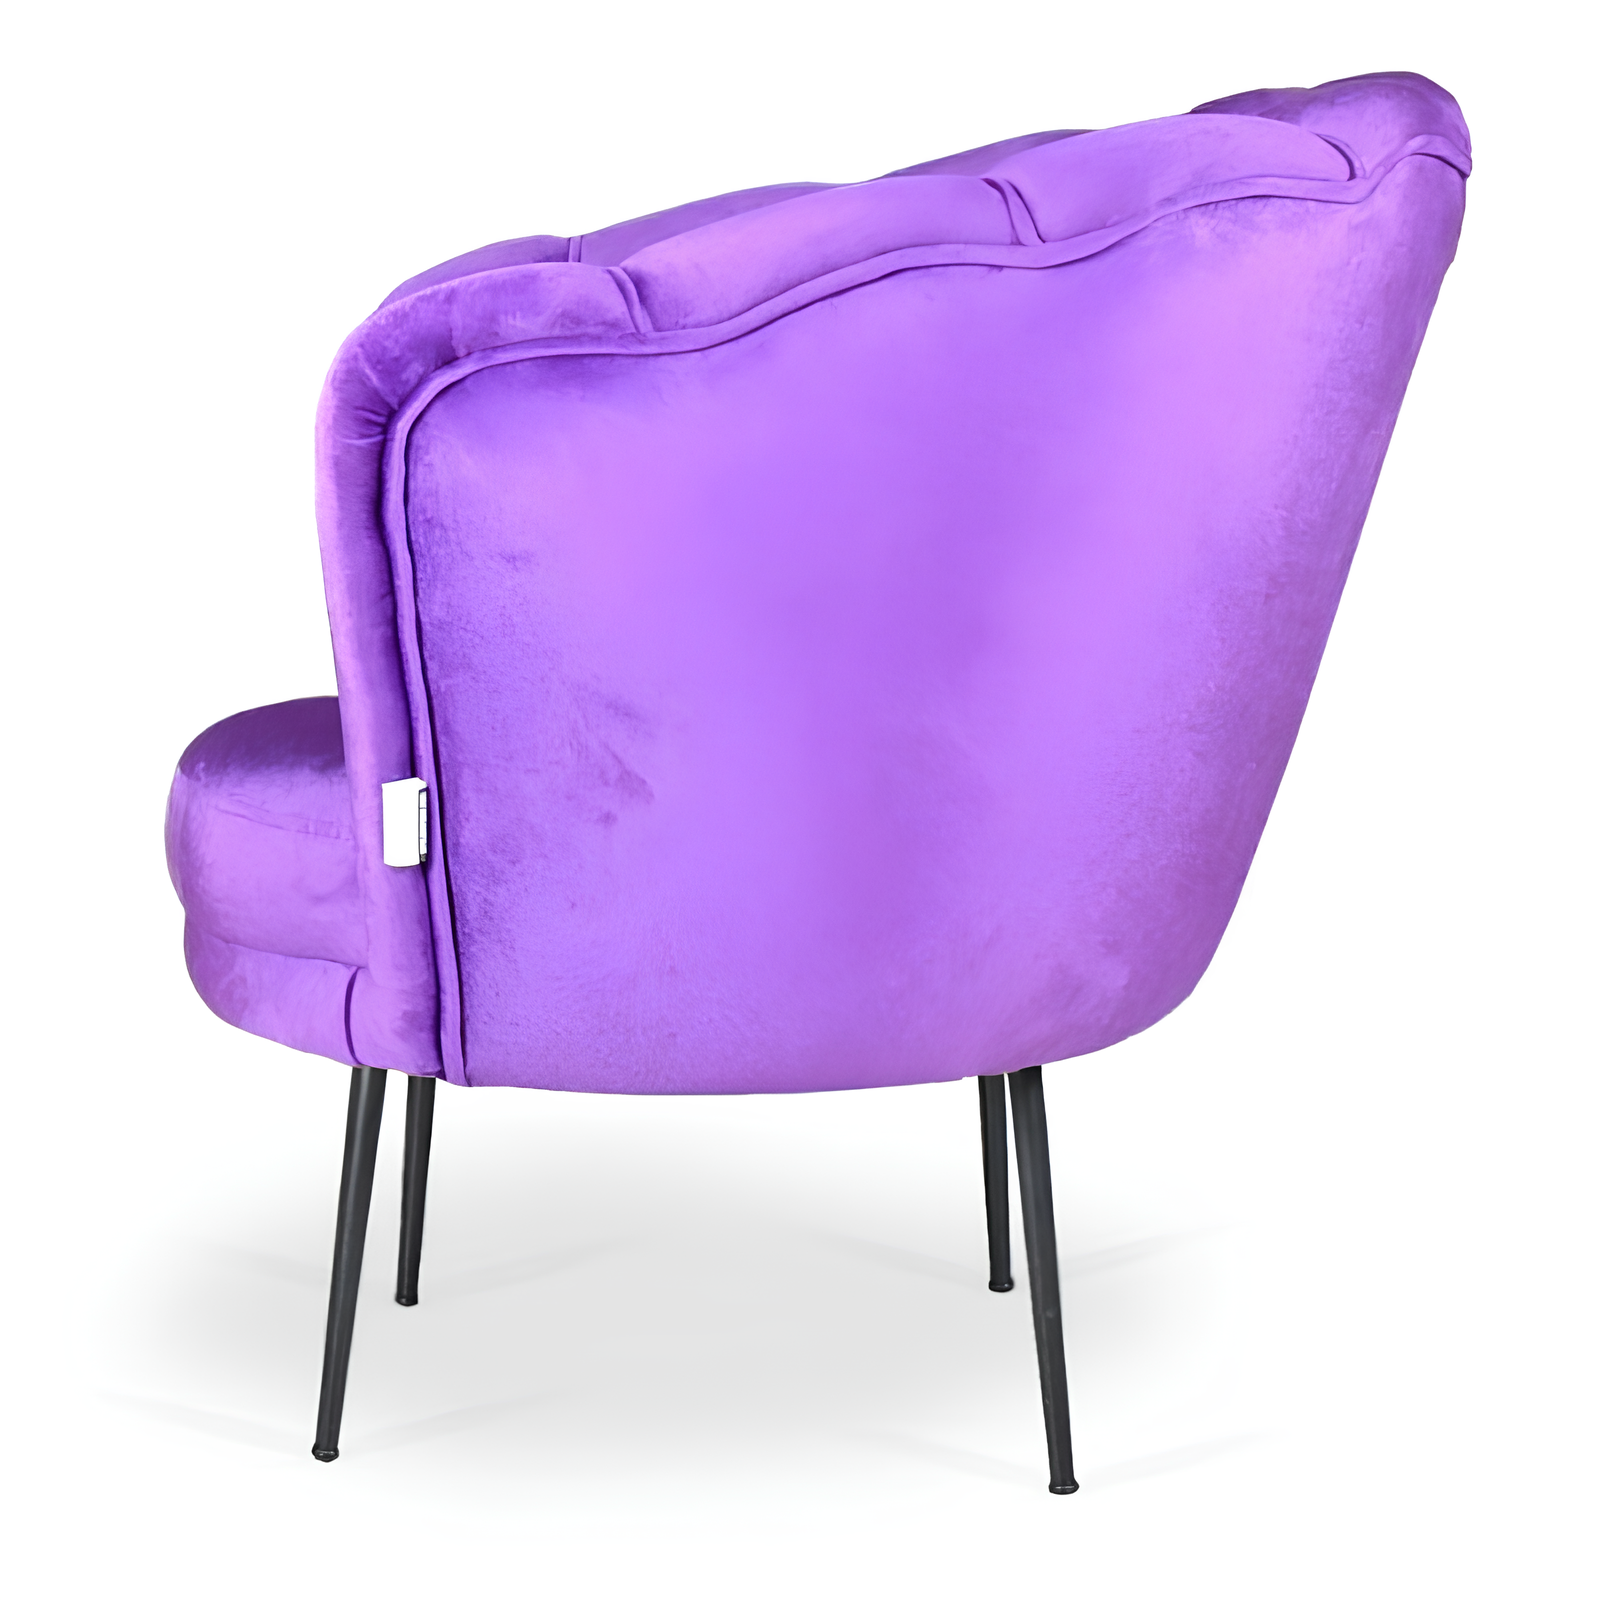 Poltrona in velluto a forma di conchiglia viola con gambe in metallo nero - Aural